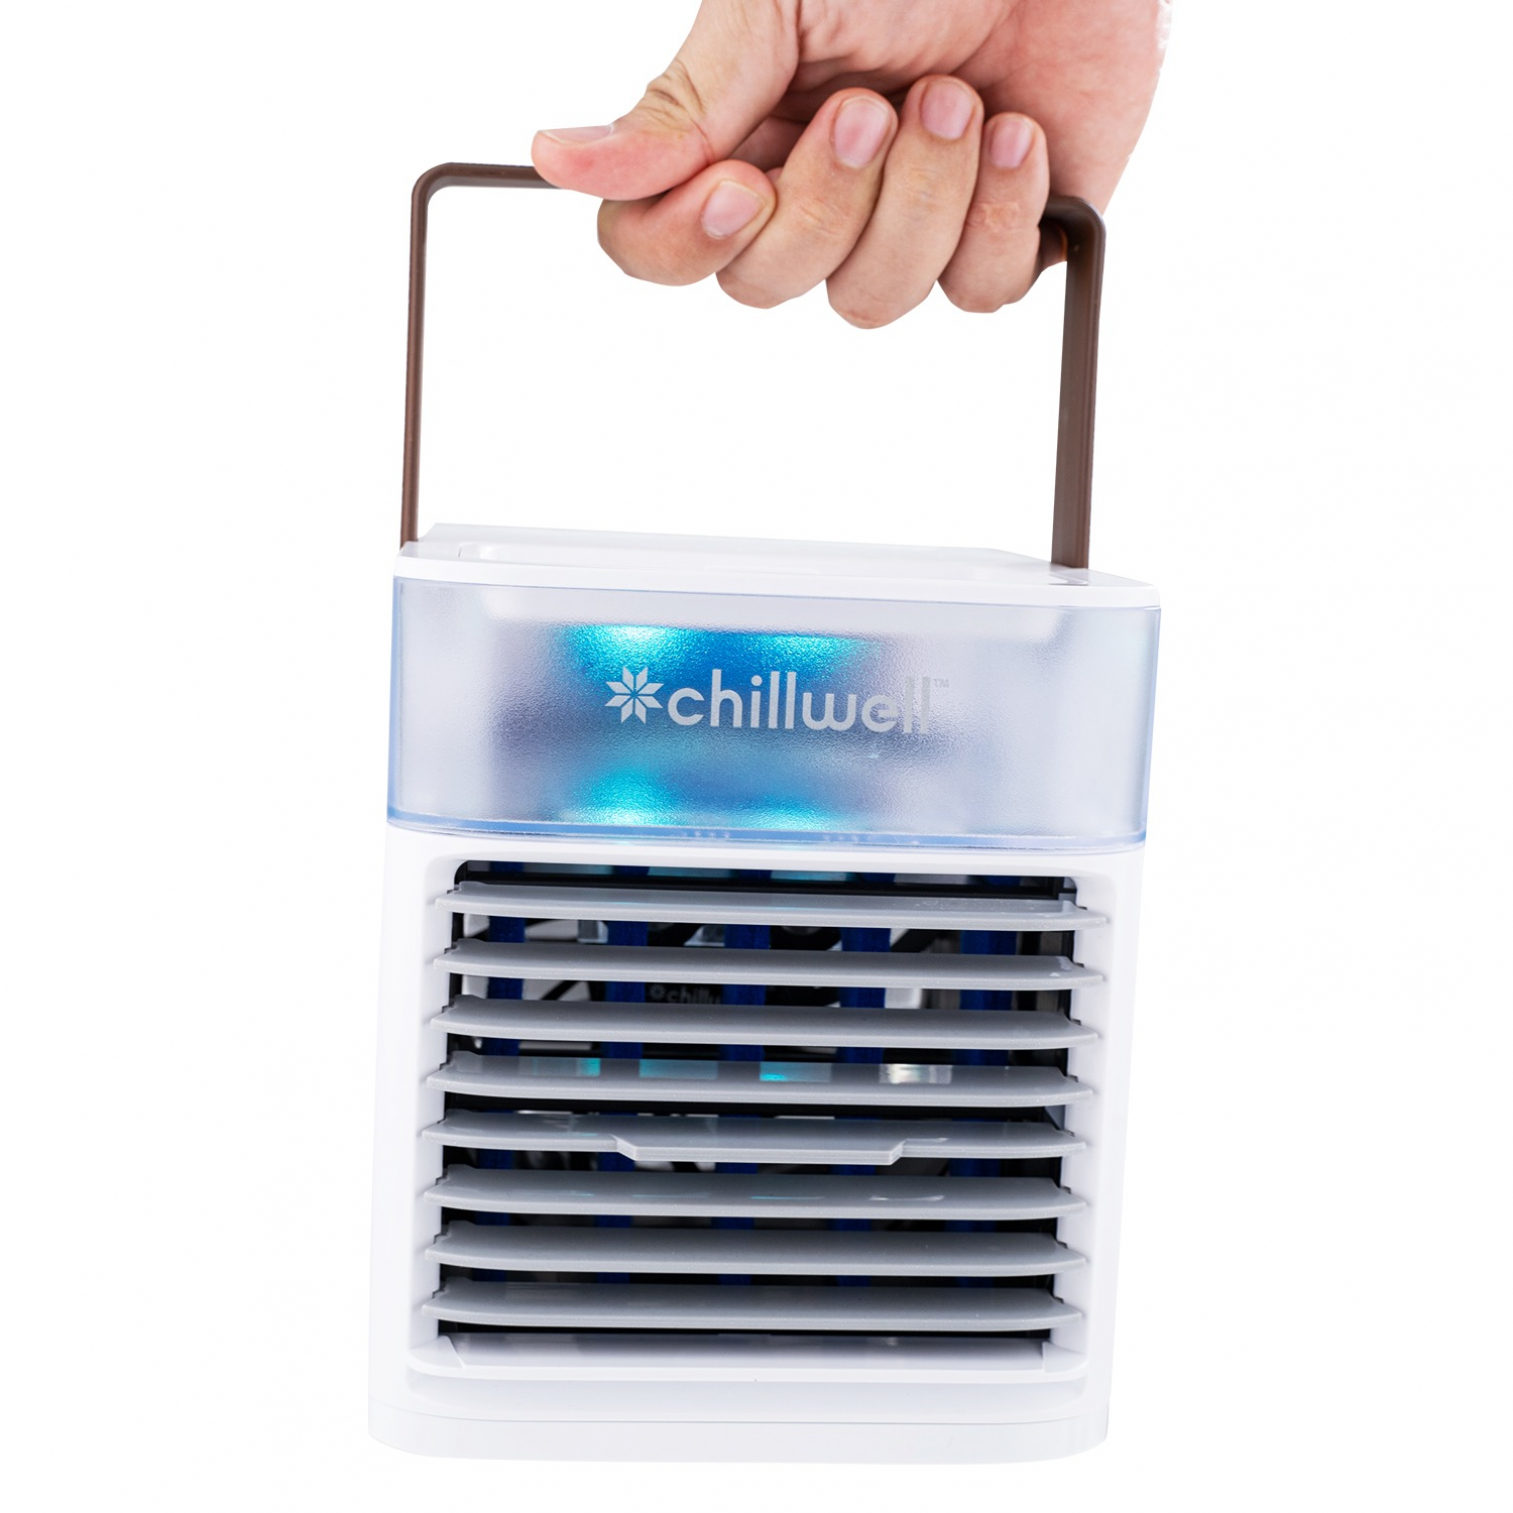 Chillwell AC Desktop Fan